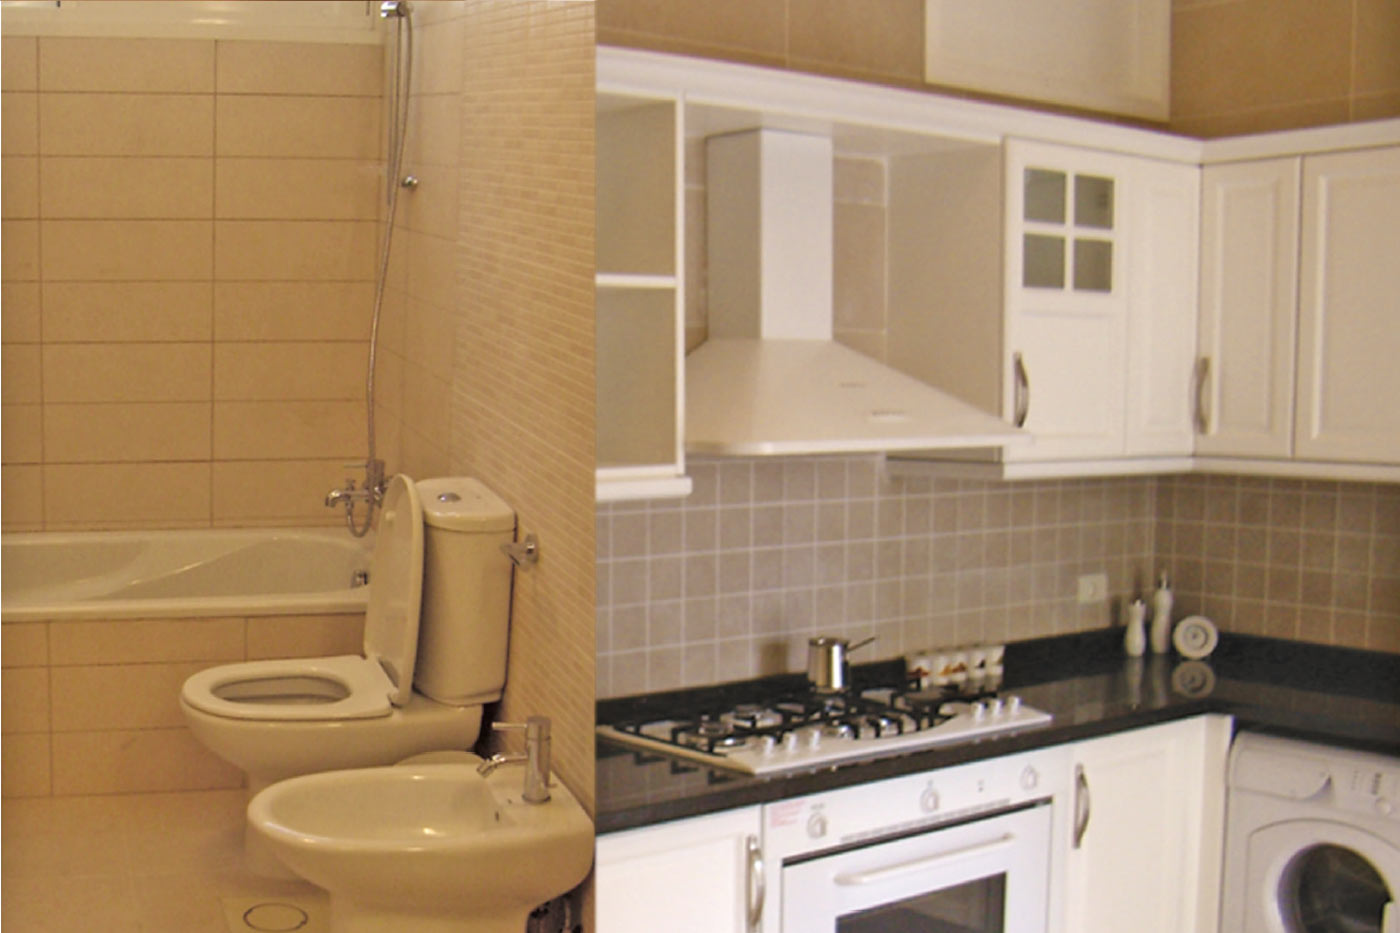 Sankari Residence - Kitchen to the Right & Toilet to Left